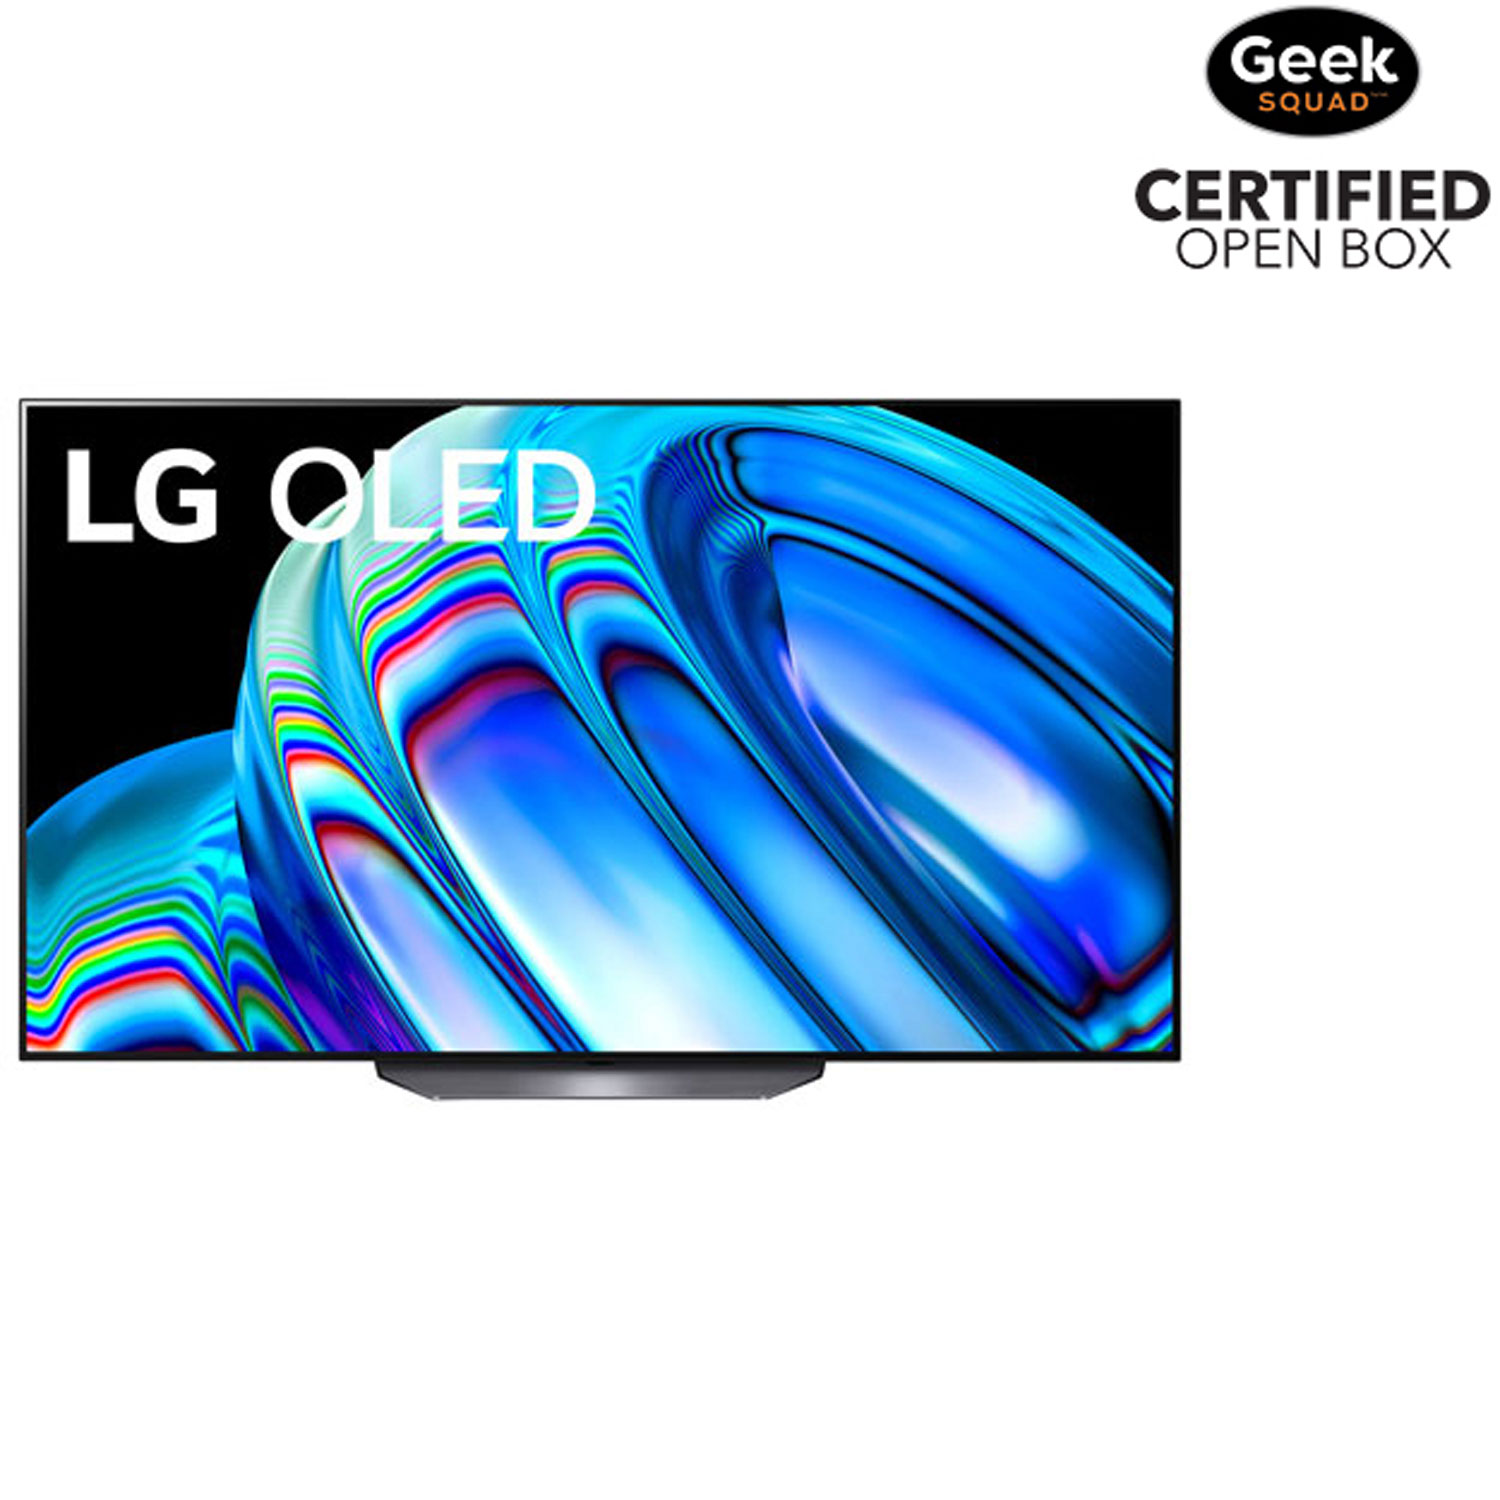 Open Box - LG 65" 4K UHD HDR OLED webOS Smart TV (OLED65B2PUA) - 2022